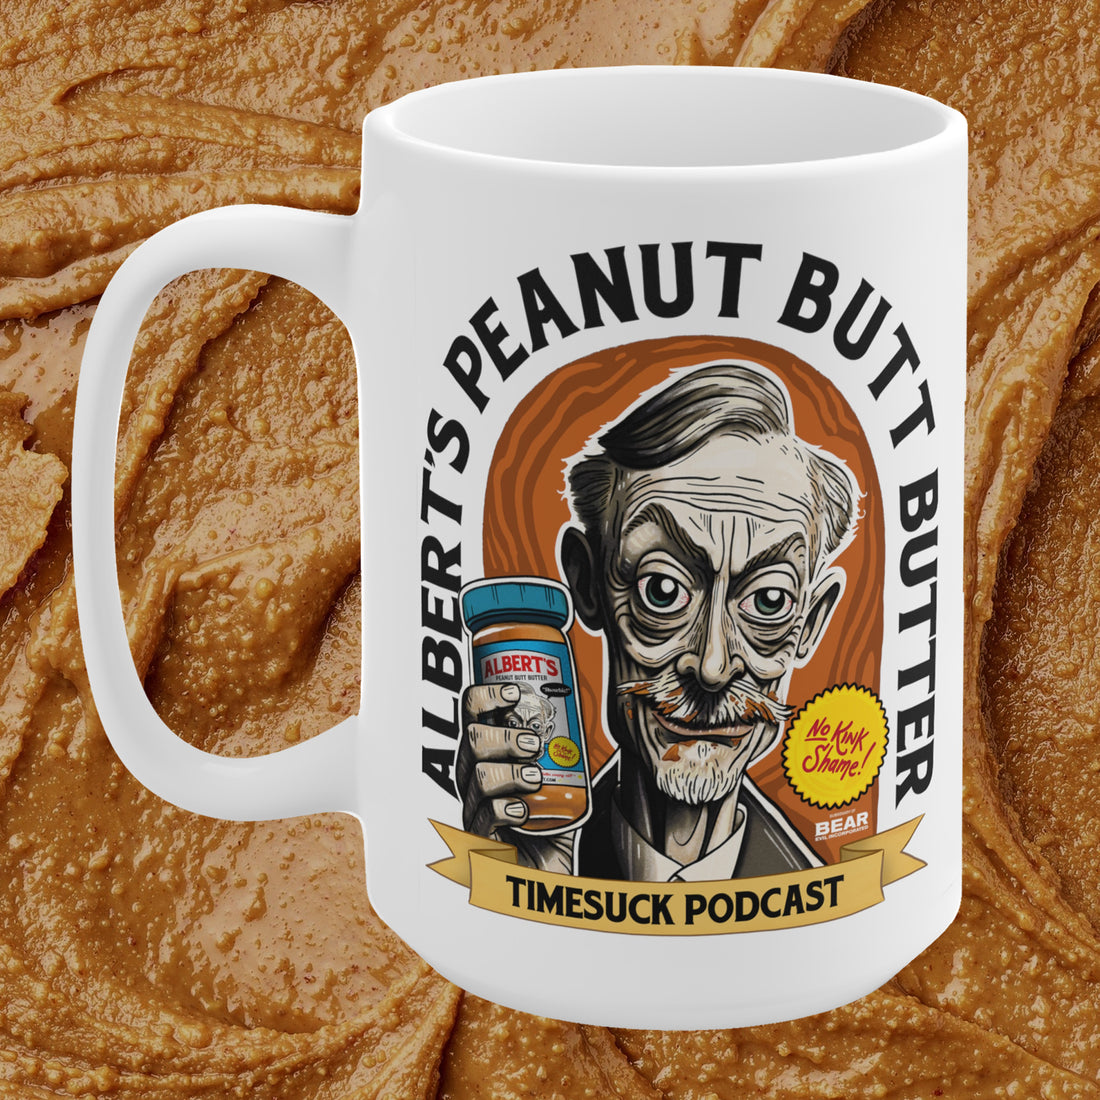 Albert's Peanut Butt Butter Mug